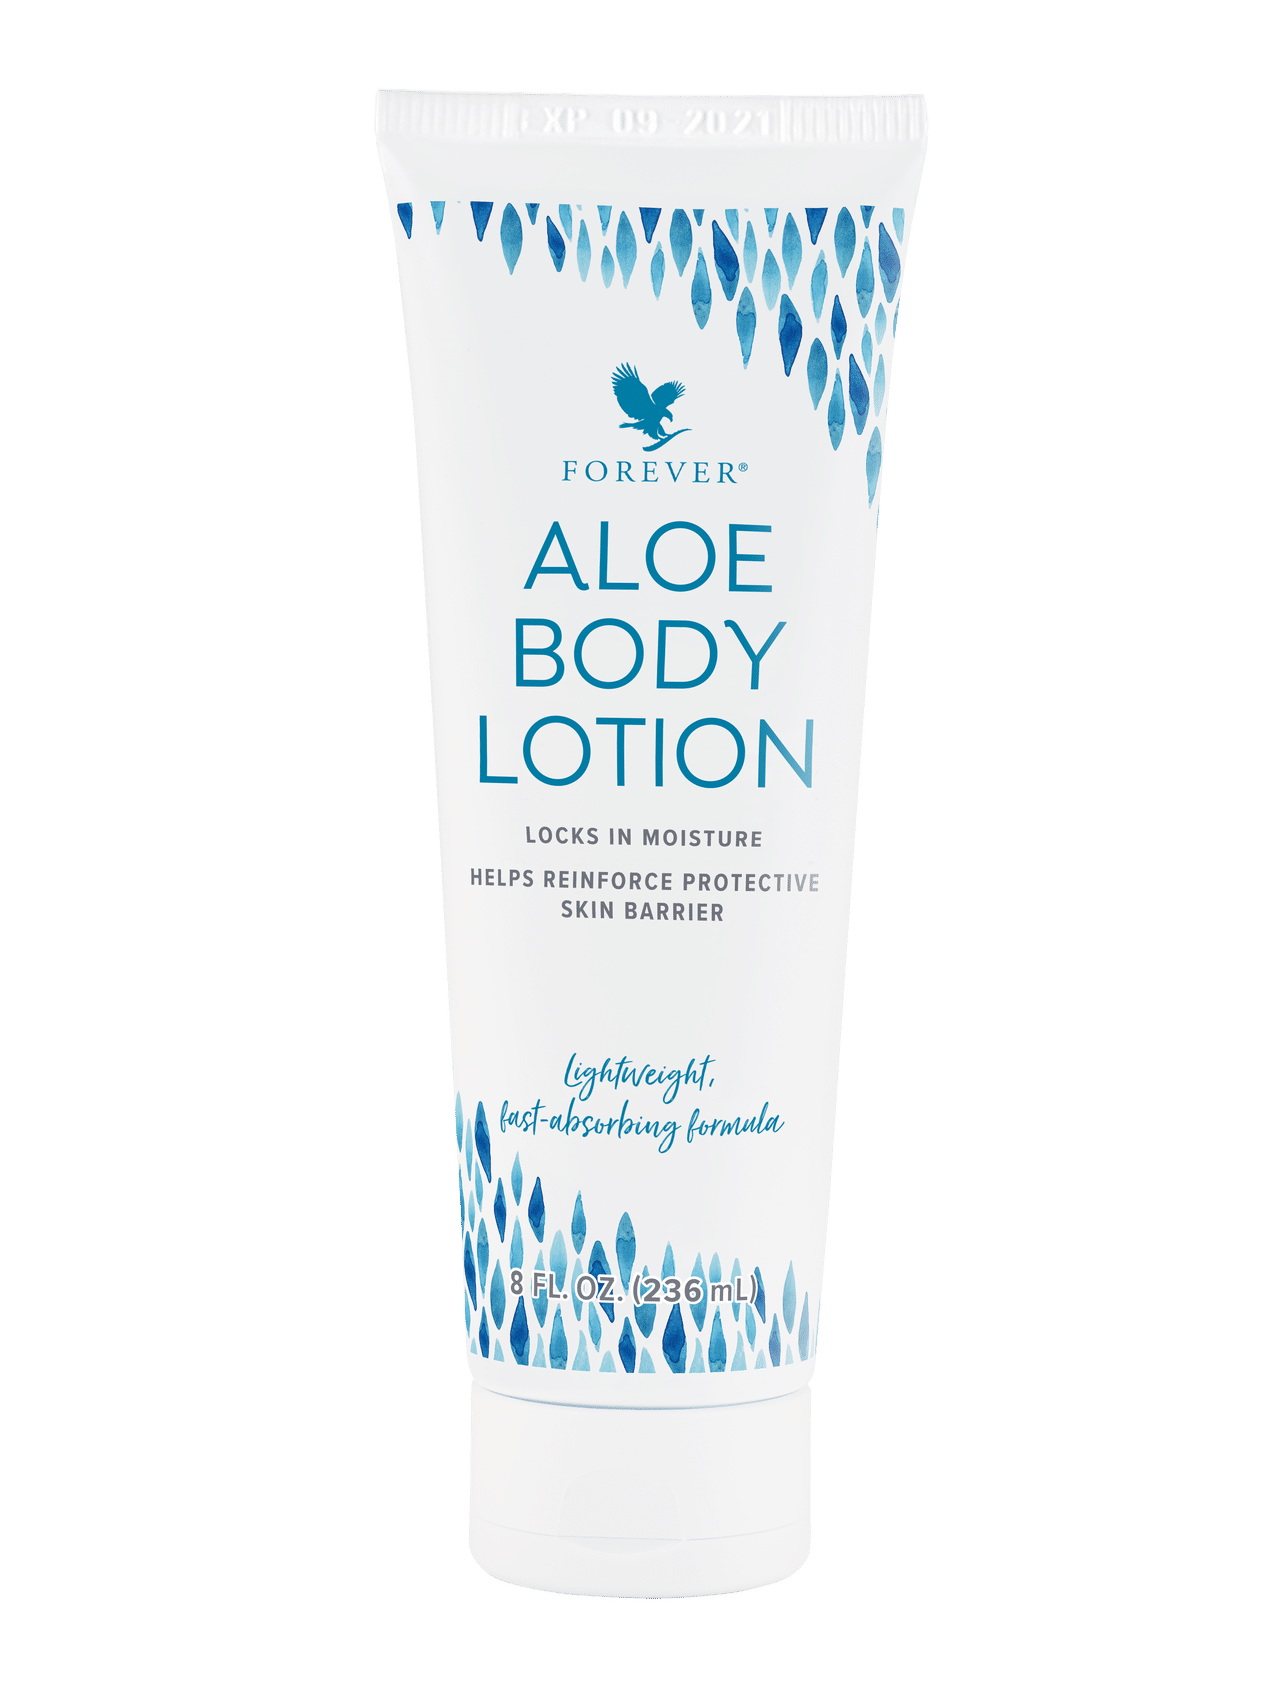 Aloe Body Lotion